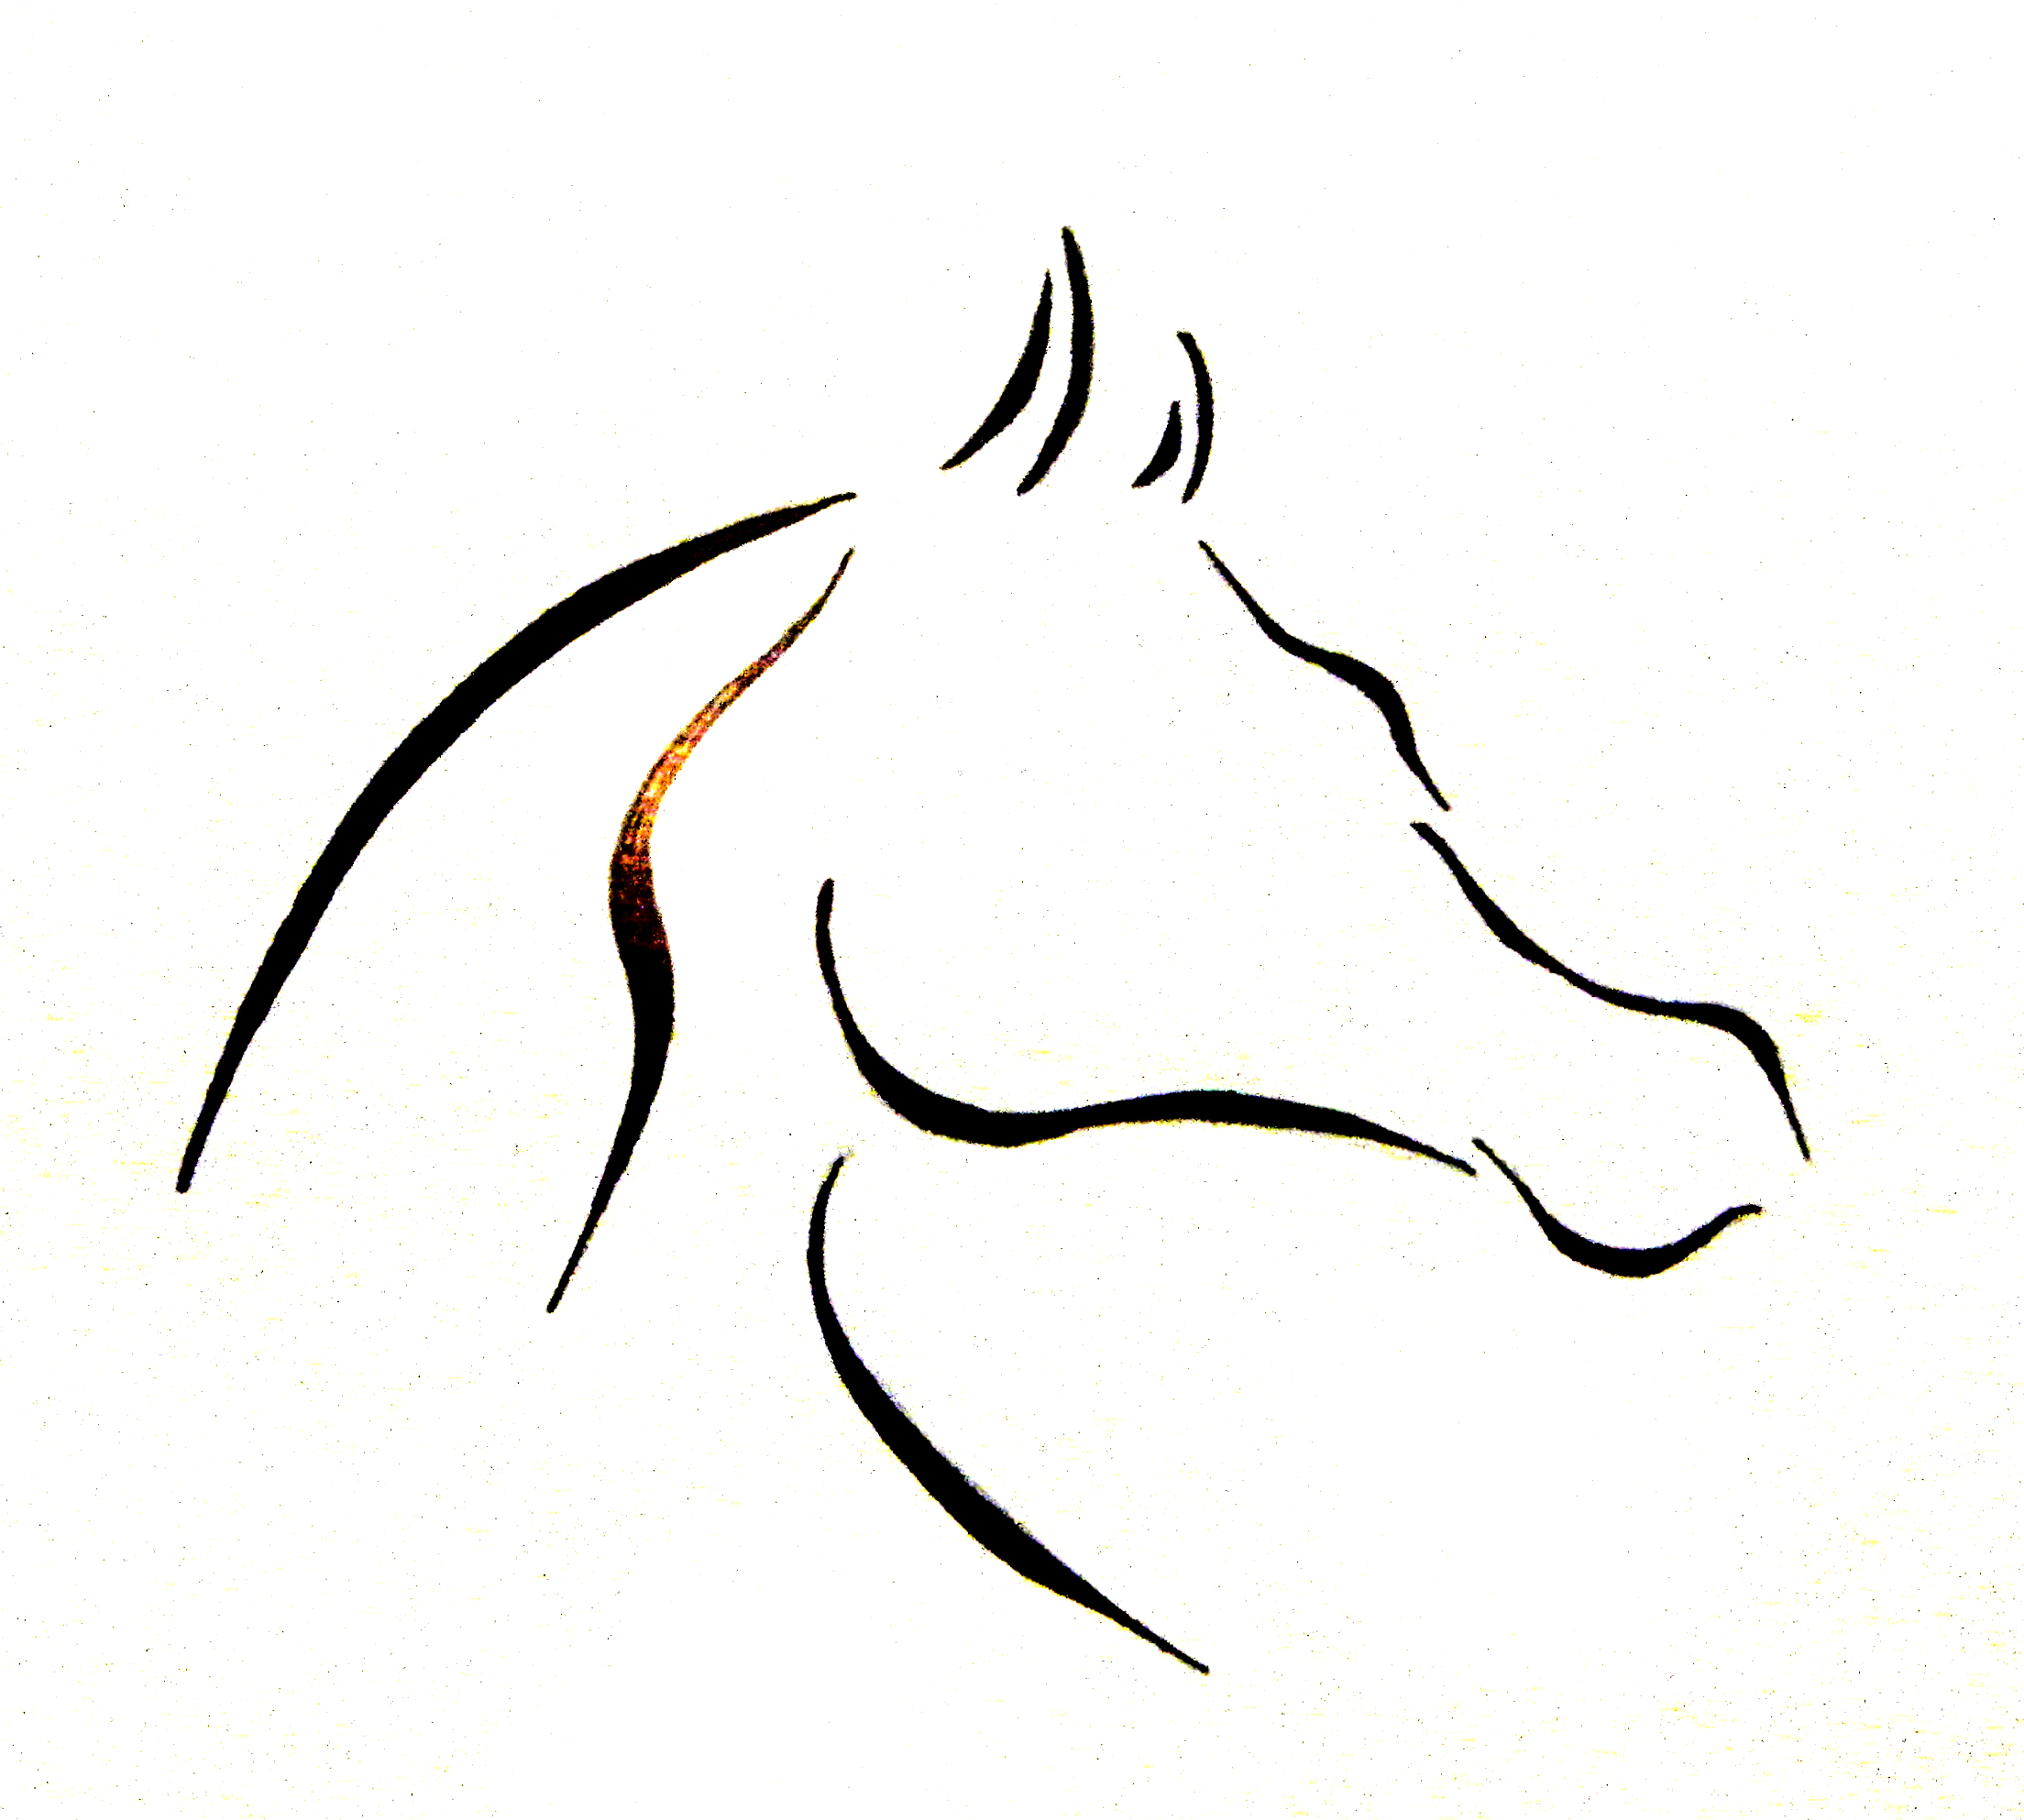 horses clipart arabian horse